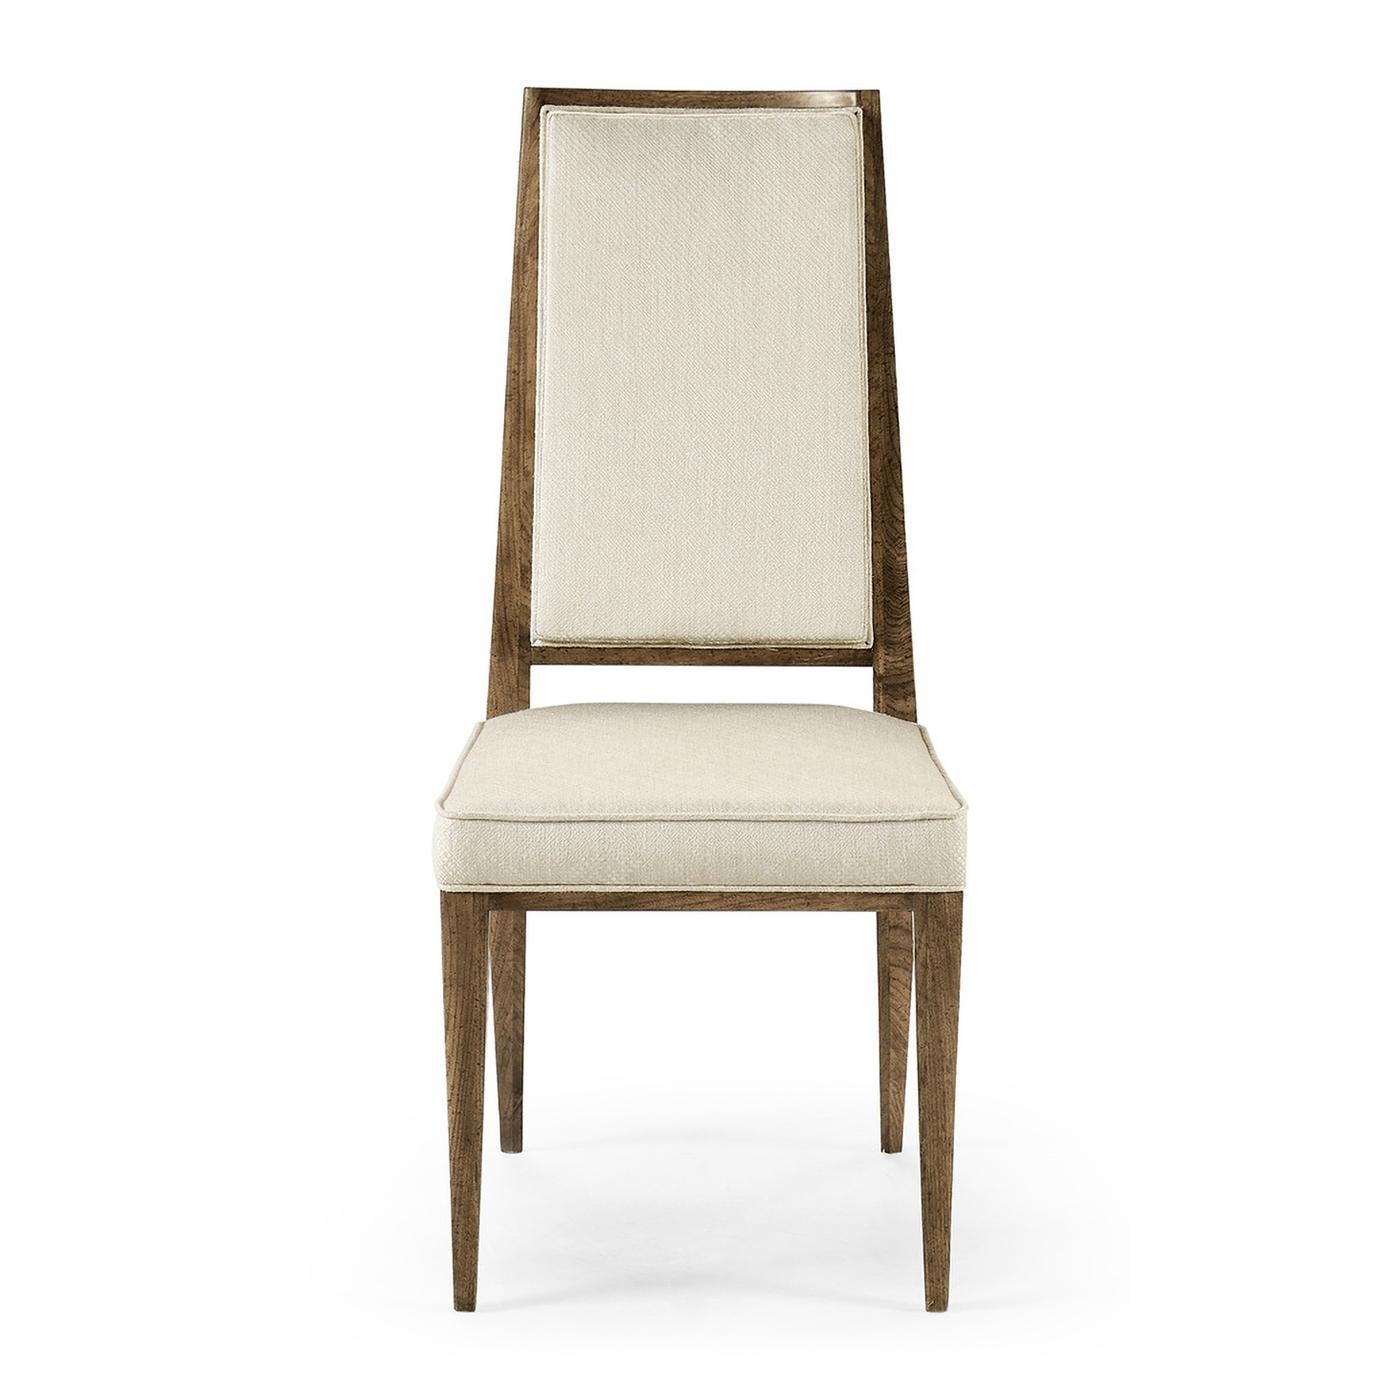 Esszimmerstuhl aus amerikanischem Nussbaum, Mid Century, mit transparenter, handgeriebener Oberfläche. Dieser Stuhl hat elegante, einfache Linien und ist mit einem Performance-Stoff gepolstert. 

Abmessungen: 19